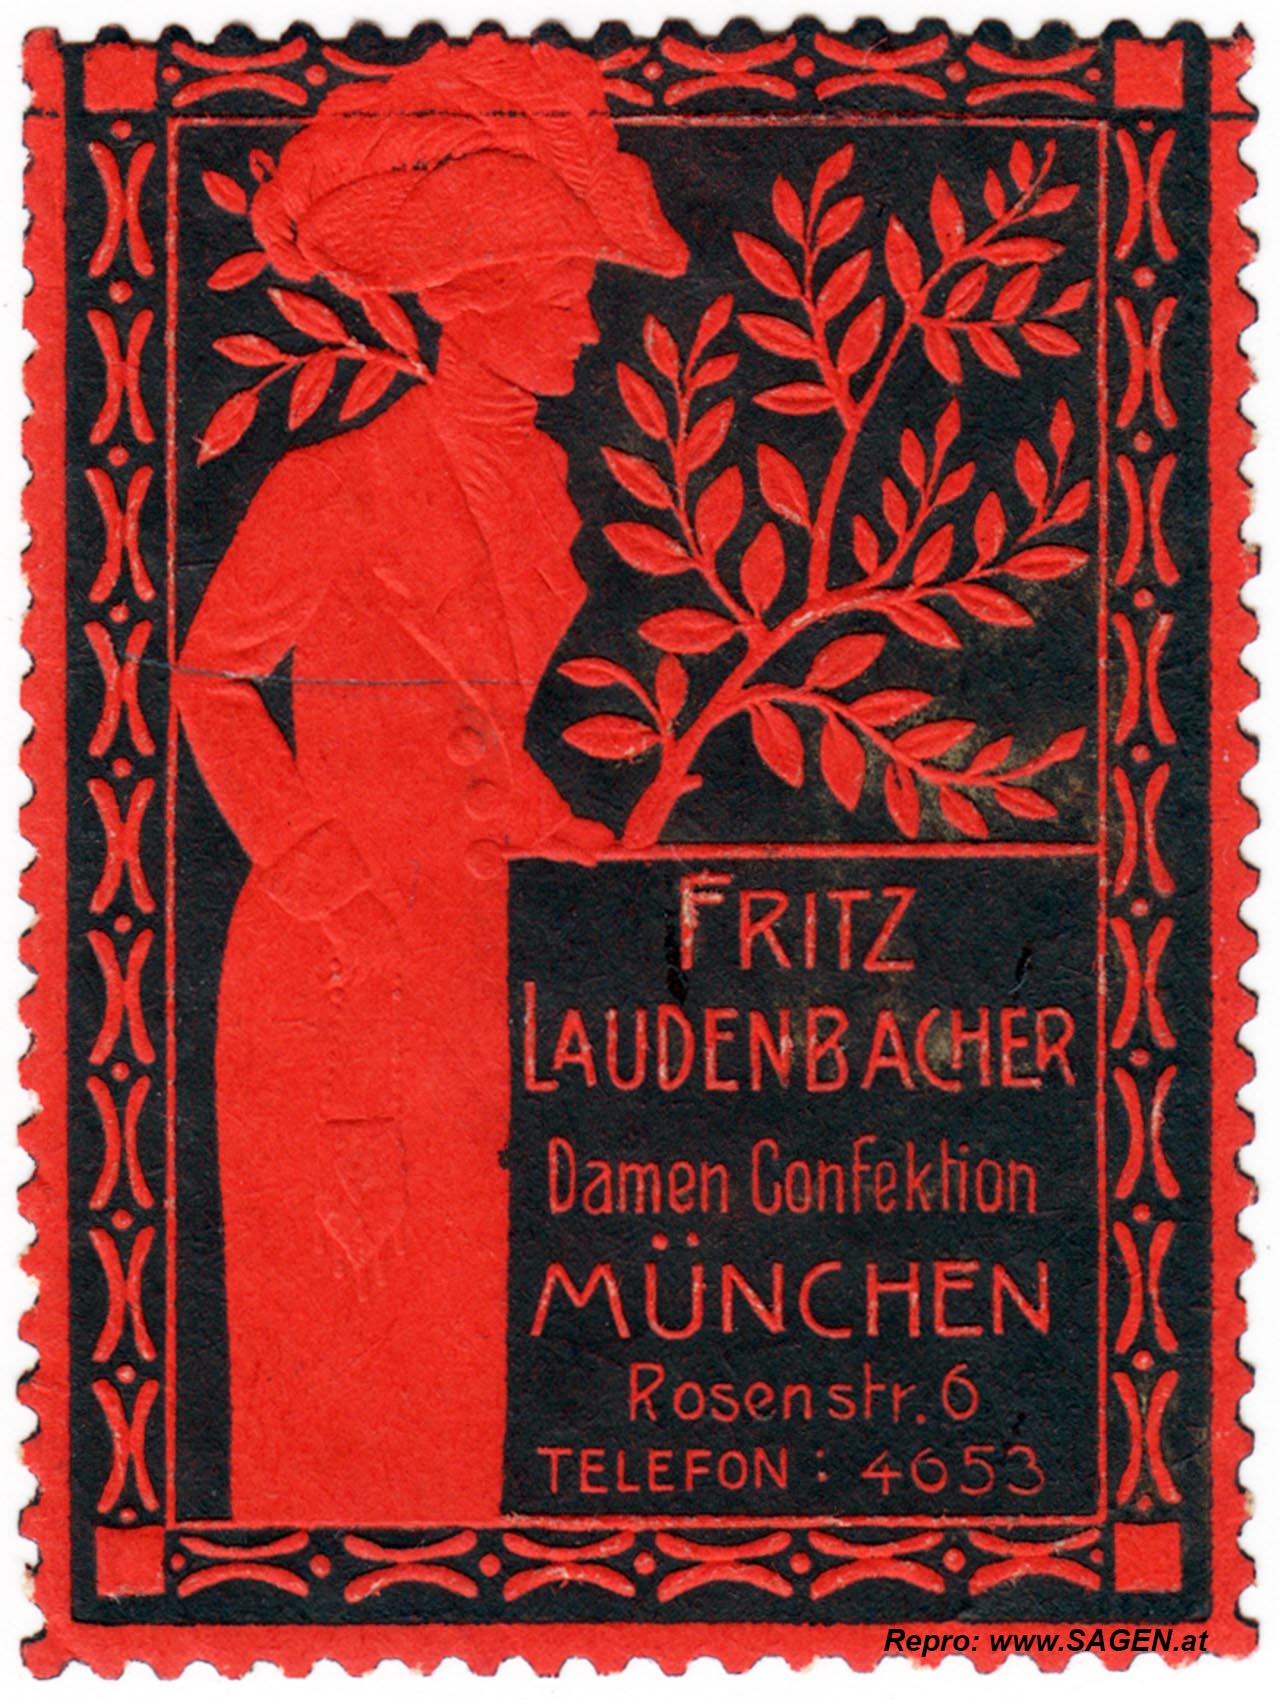 Vignette Damen Konfektion Fritz Laudenbacher München